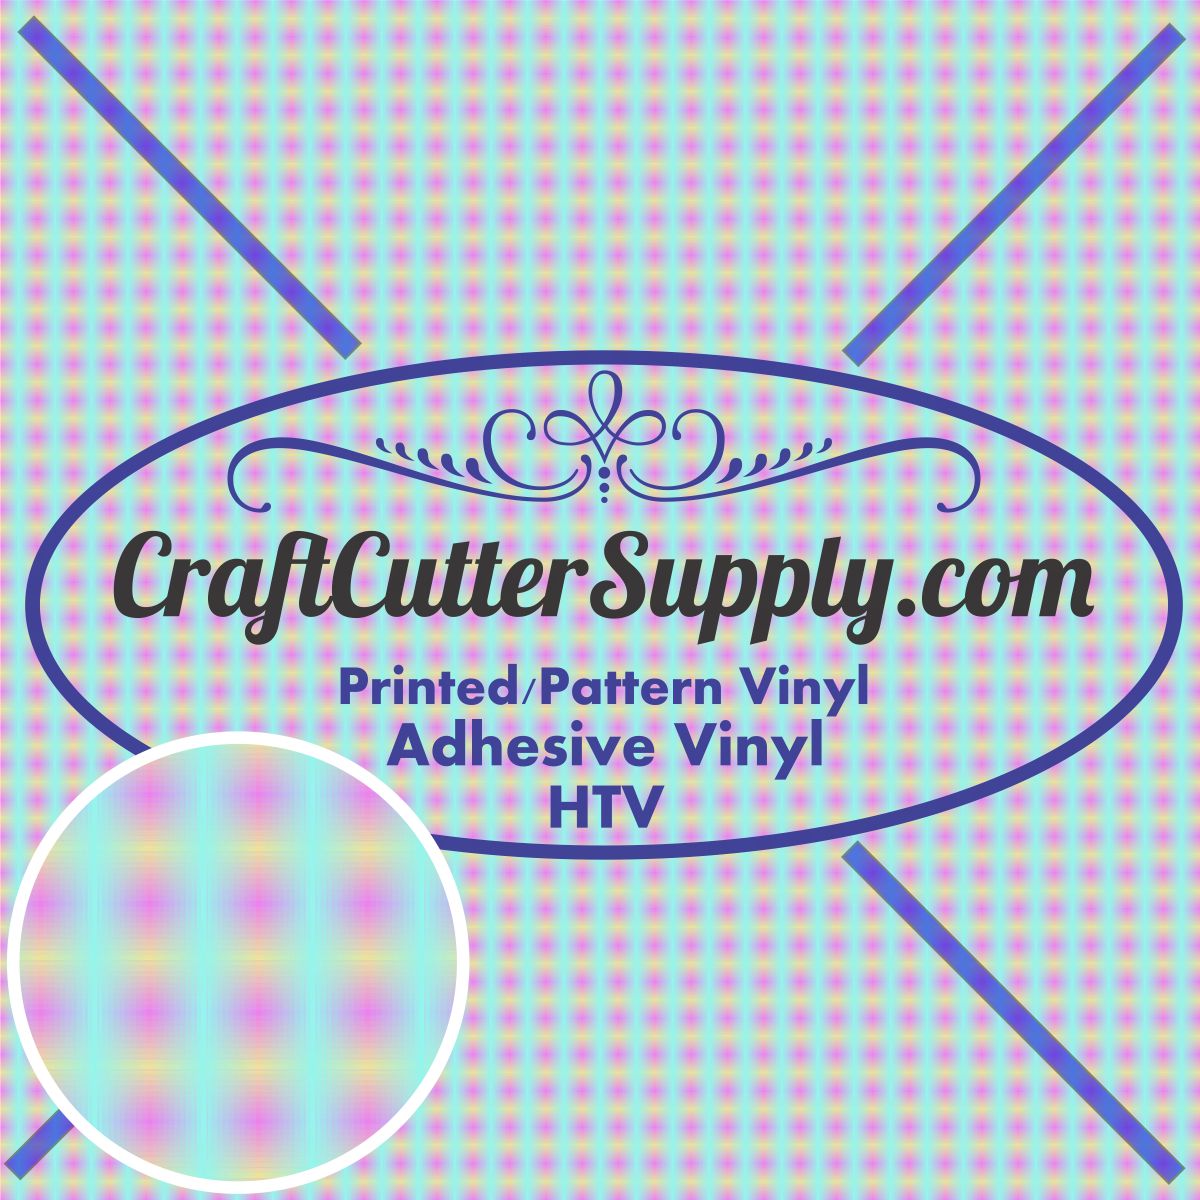 Pattern 37 12x12 - CraftCutterSupply.com